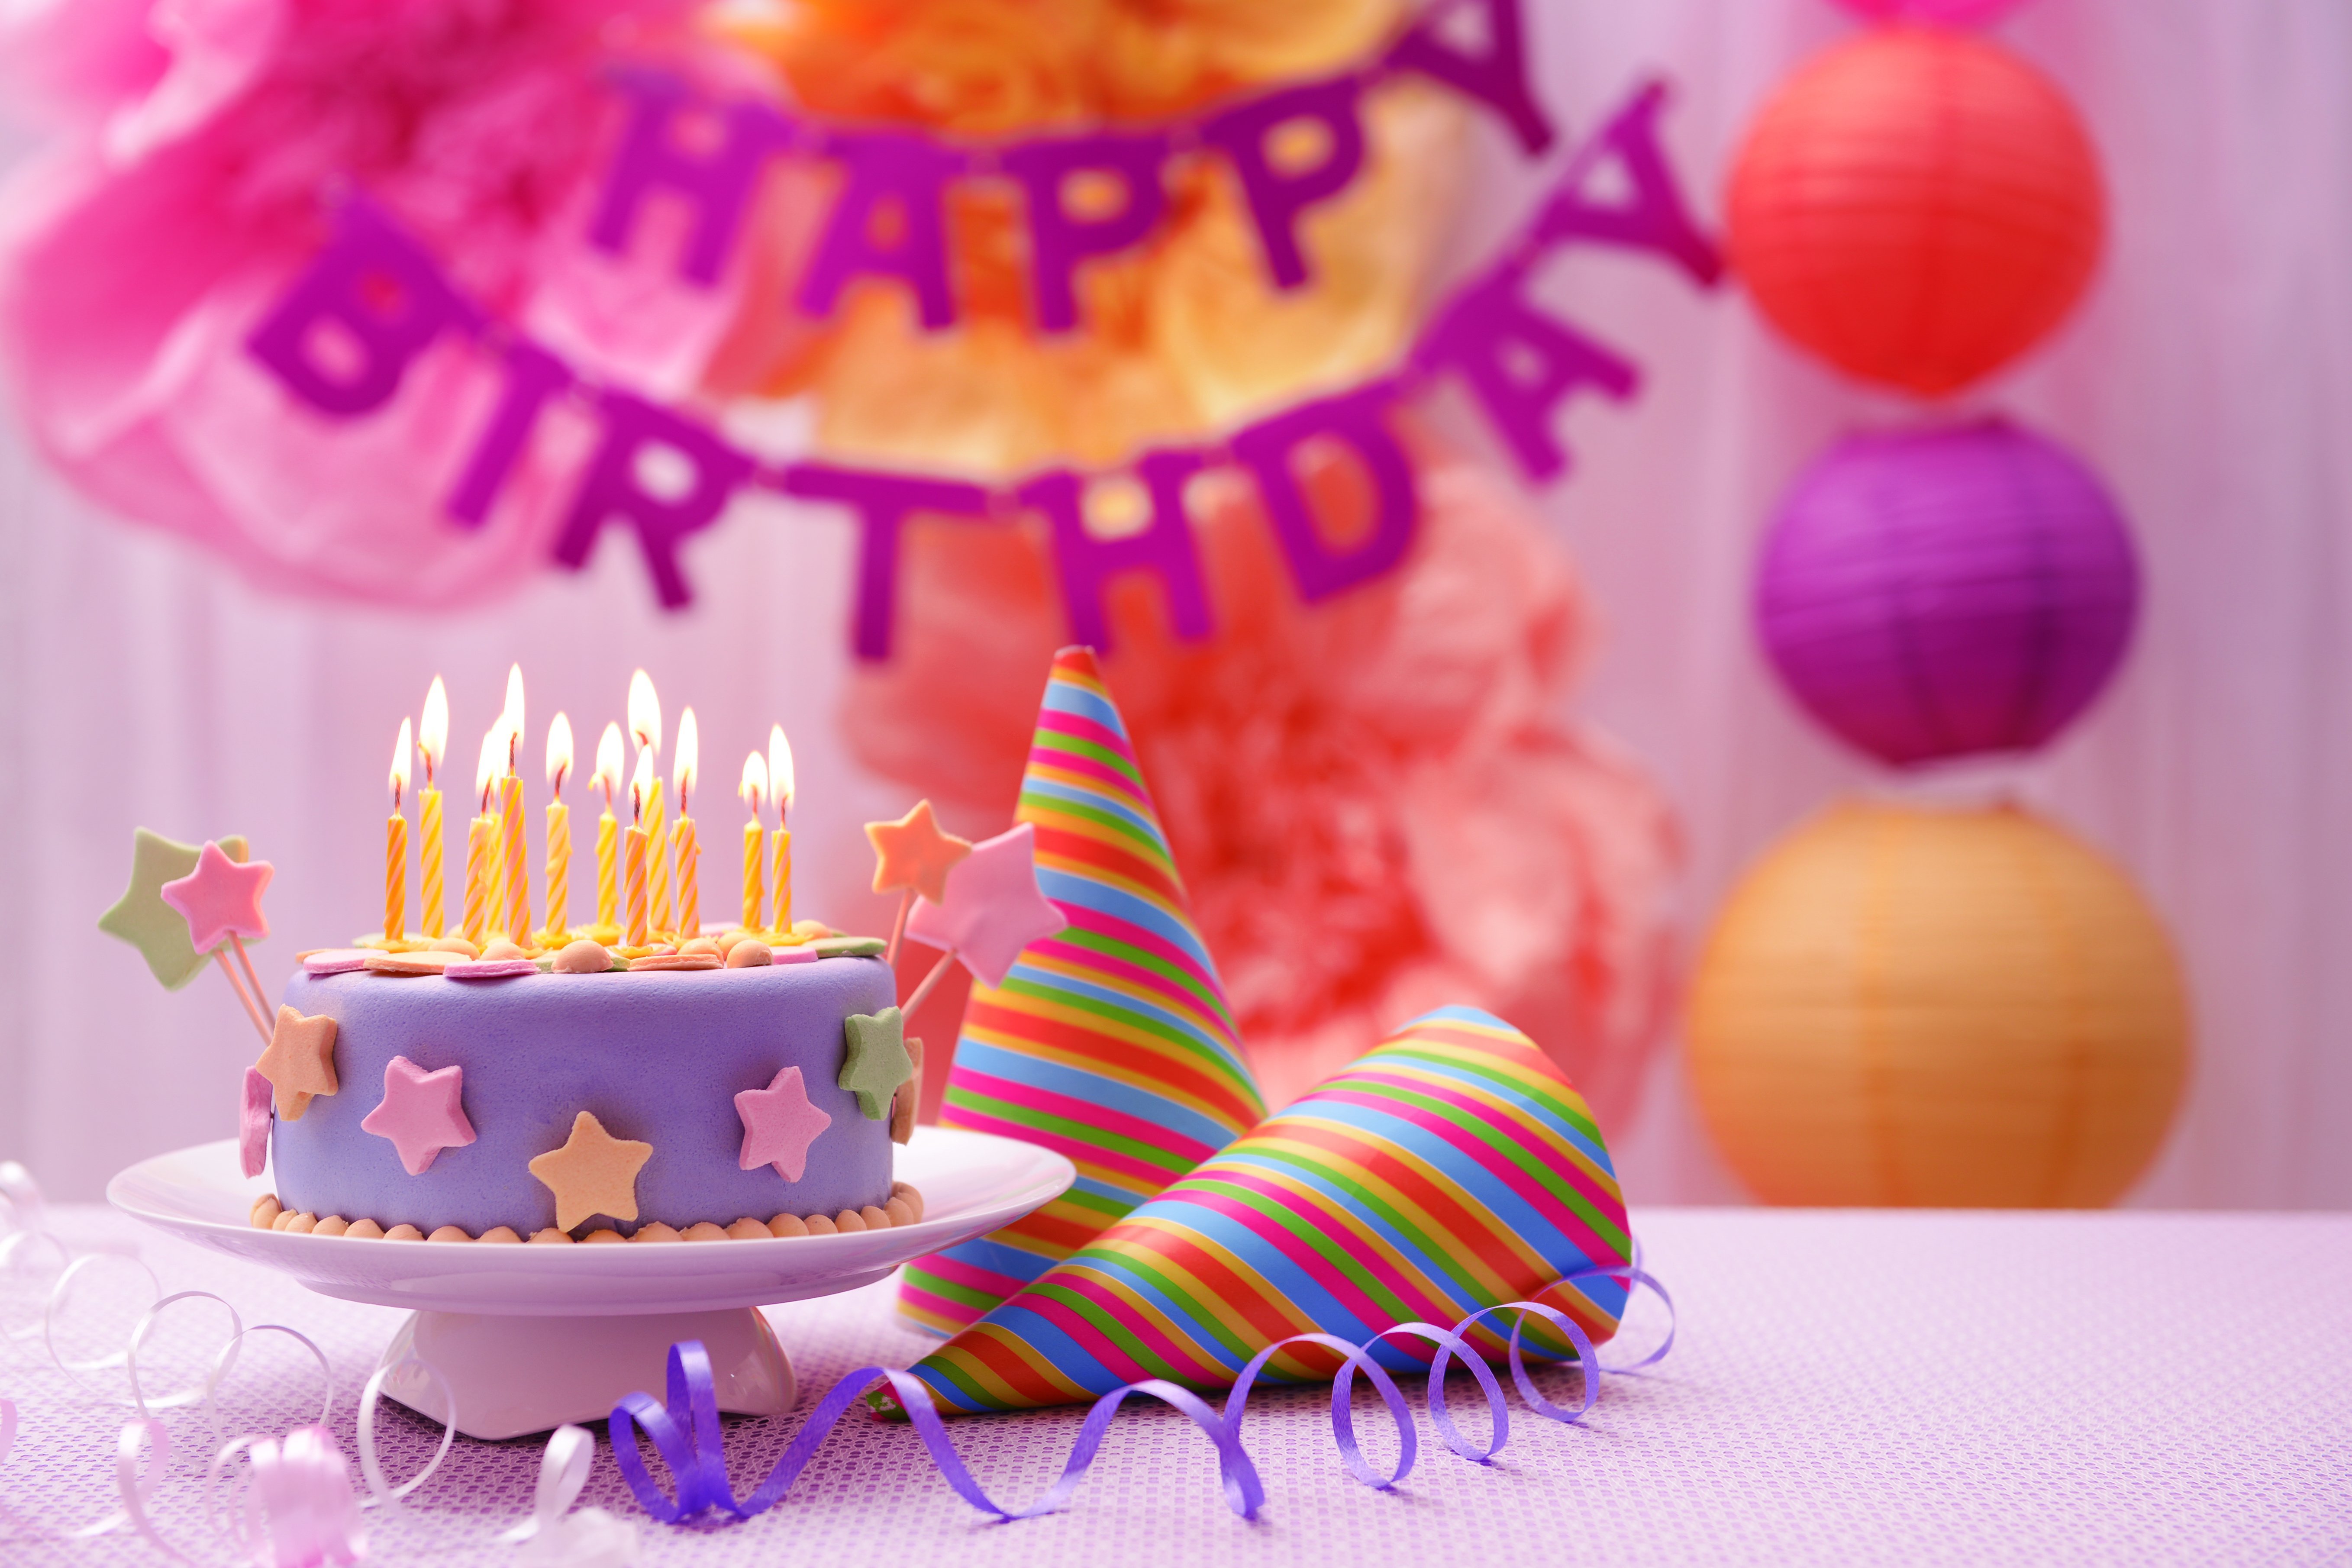 С днем рождения с тортом и шарами. С днем рождения. Тортик с днем рождения. Открытка с днём рождения торт. С днем рождения торт и цветы.